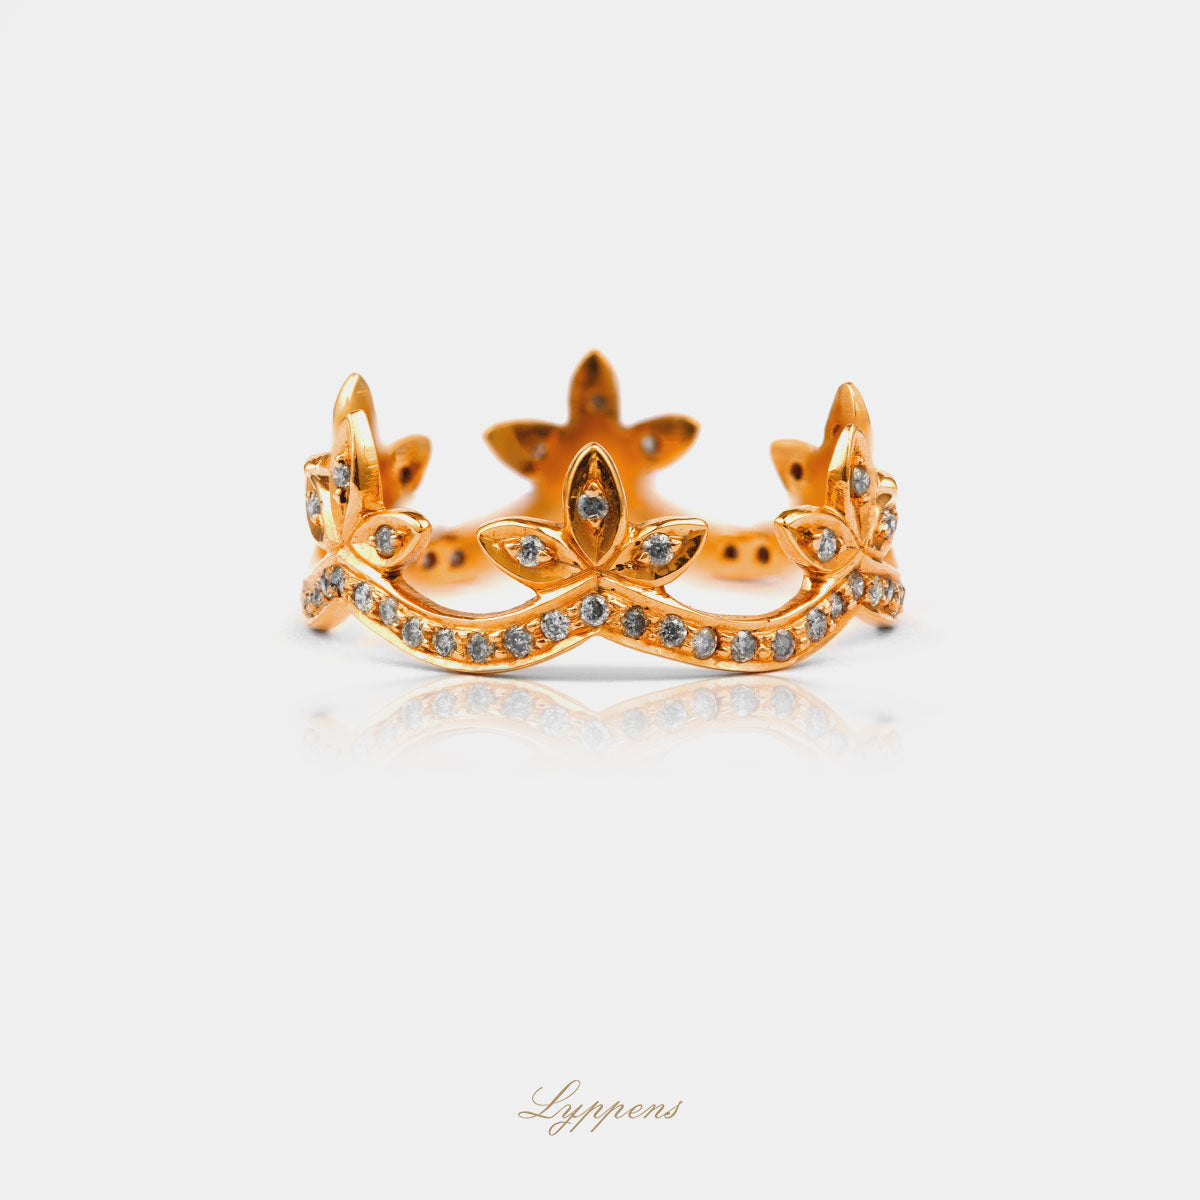 Liggende vintage ring in de vorm van een kroon en gezet met briljant geslepen diamant.